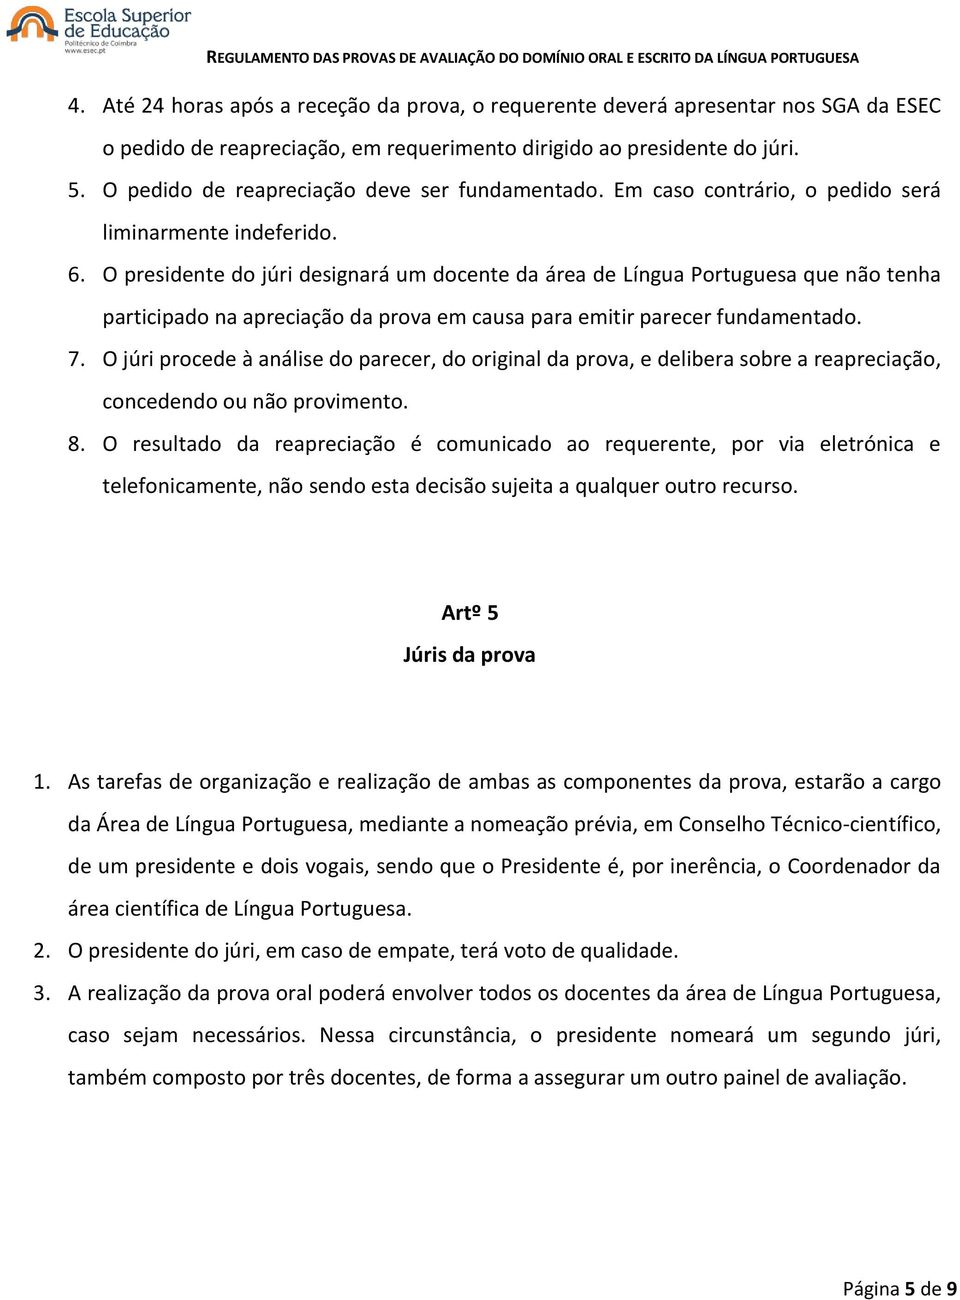 O presidente do júri designará um docente da área de Língua Portuguesa que não tenha participado na apreciação da prova em causa para emitir parecer fundamentado. 7.